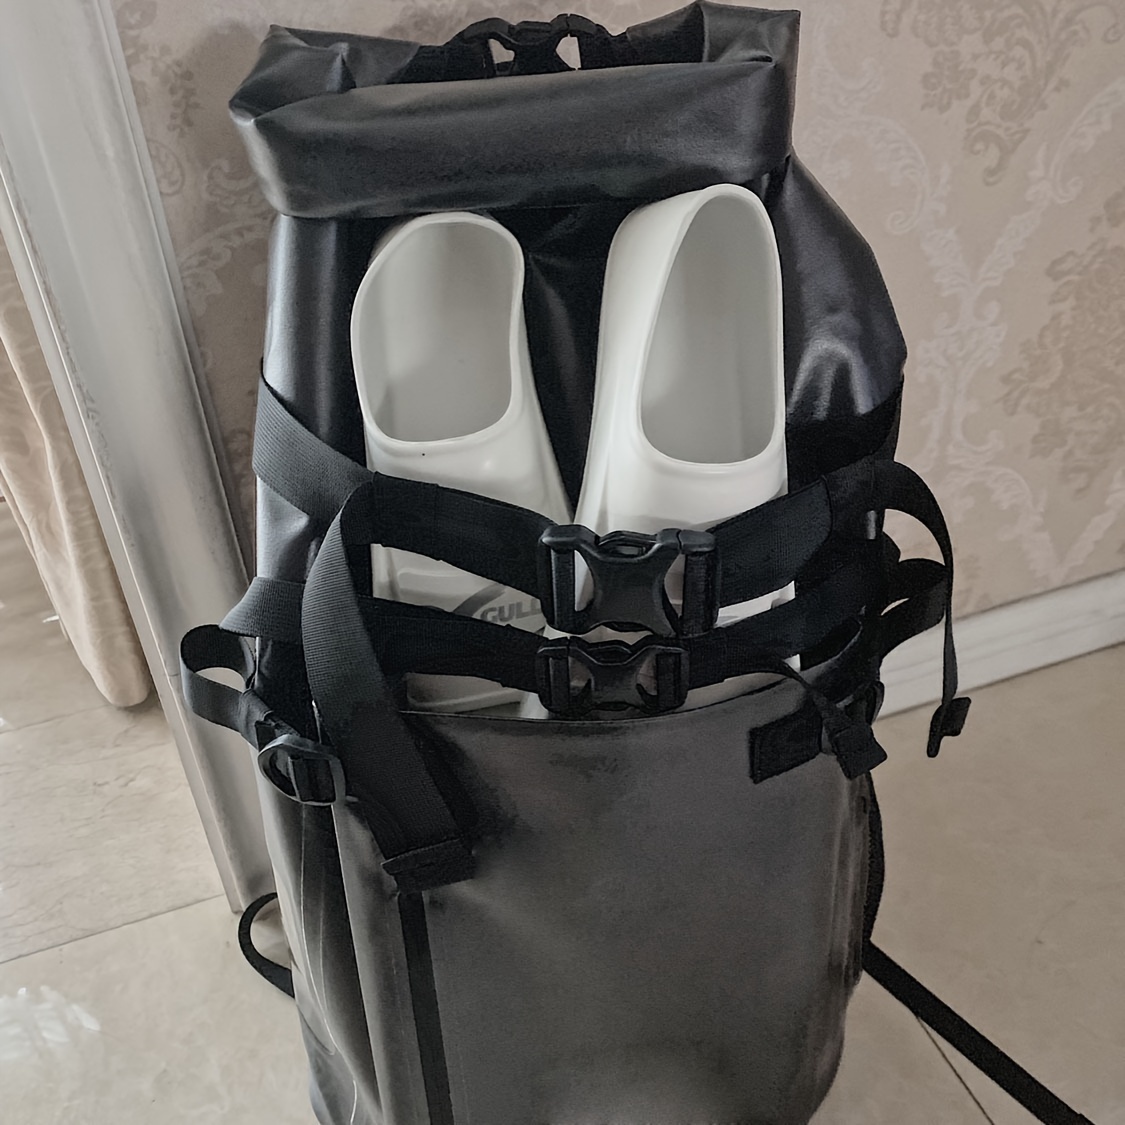 Waterproof Dry Bag Kayaking Portable Sports Backpack Boating - Temu